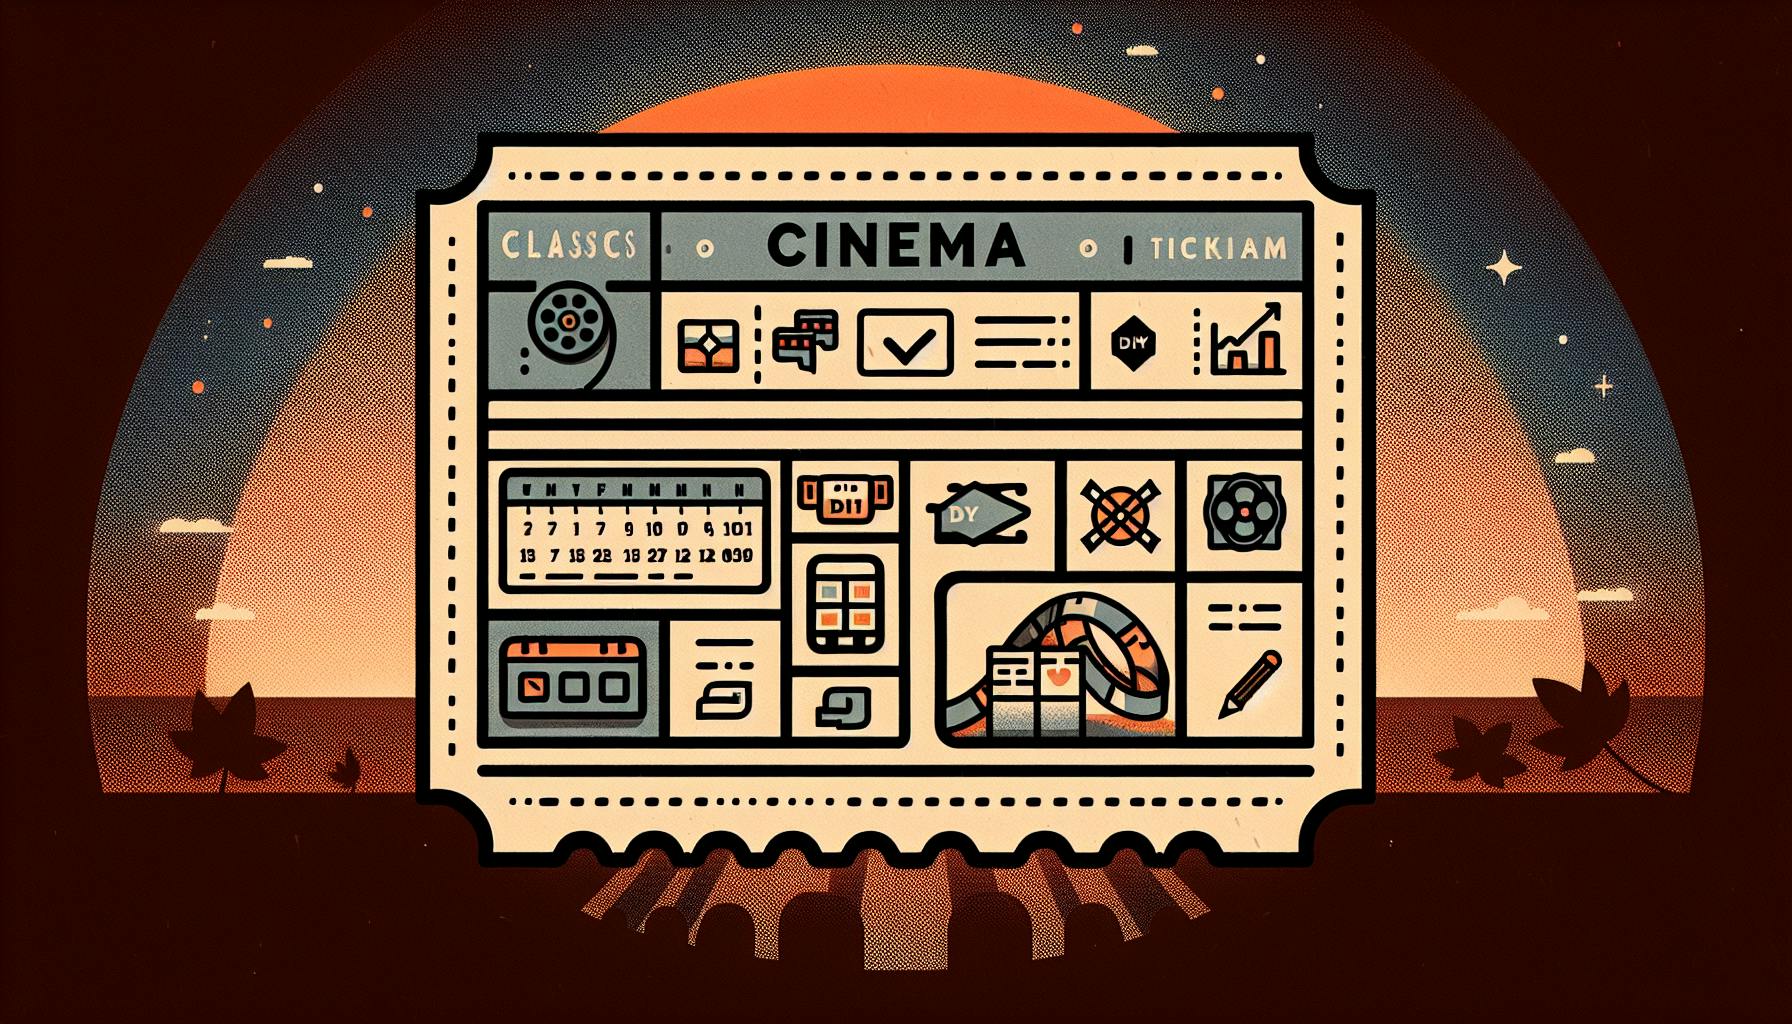 Movie Ticket Software Essentials